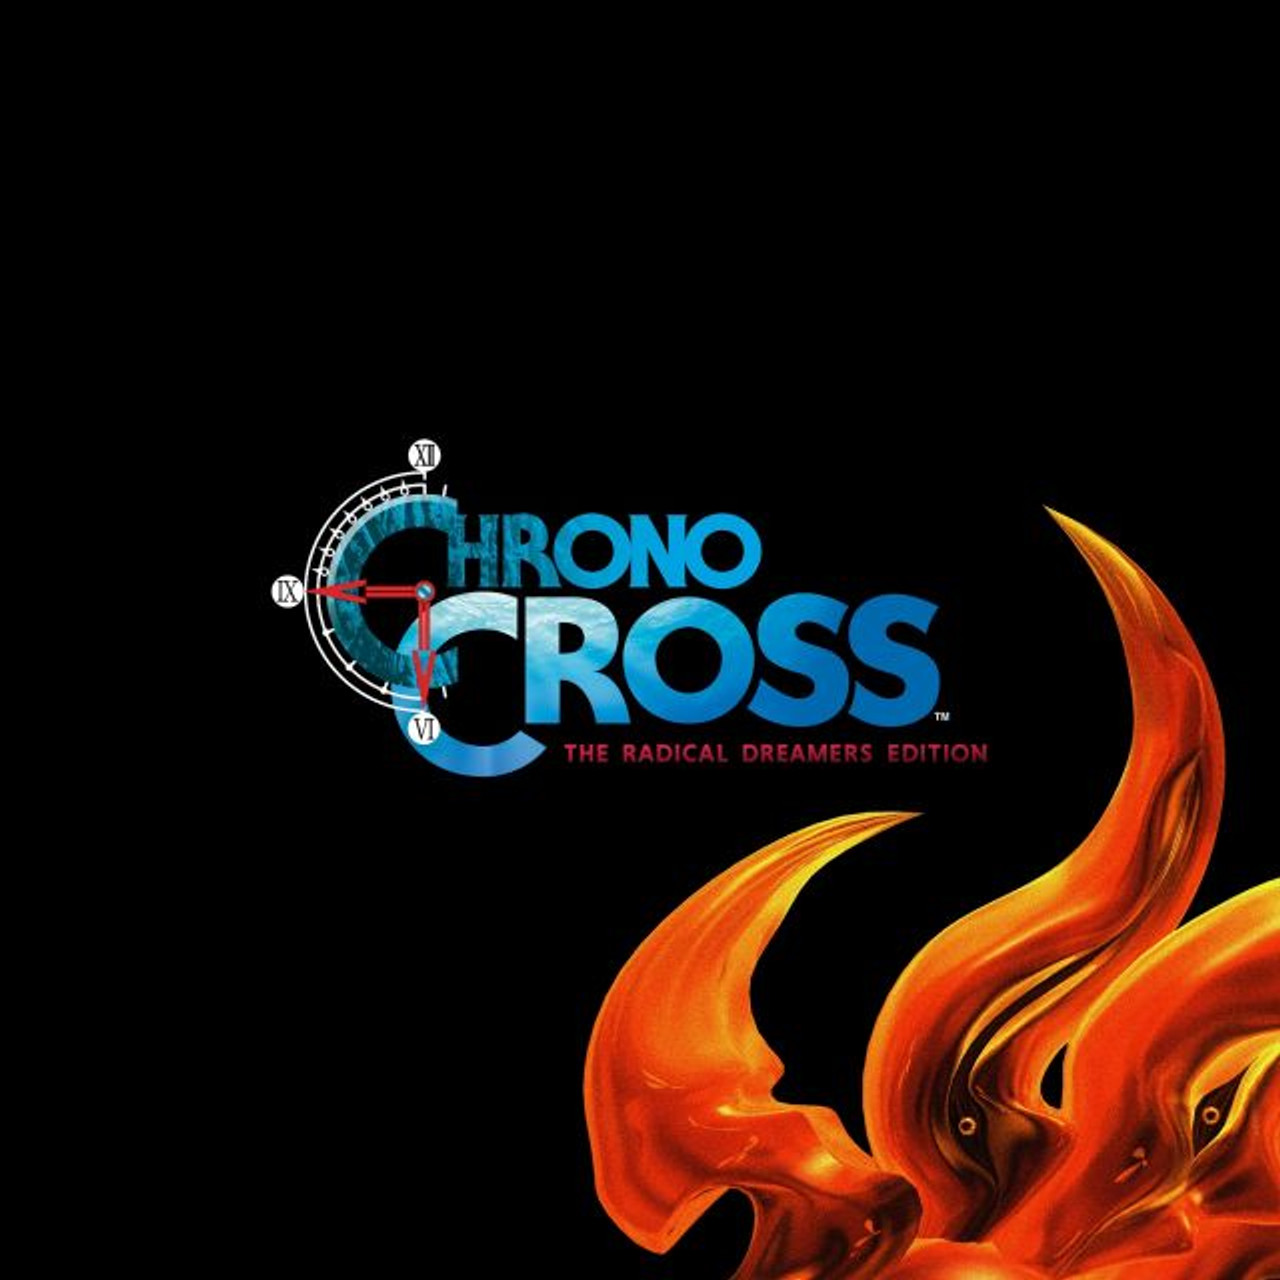 Detalhes e Chrono Cross. Detalhes são importantes. Chrono Cross